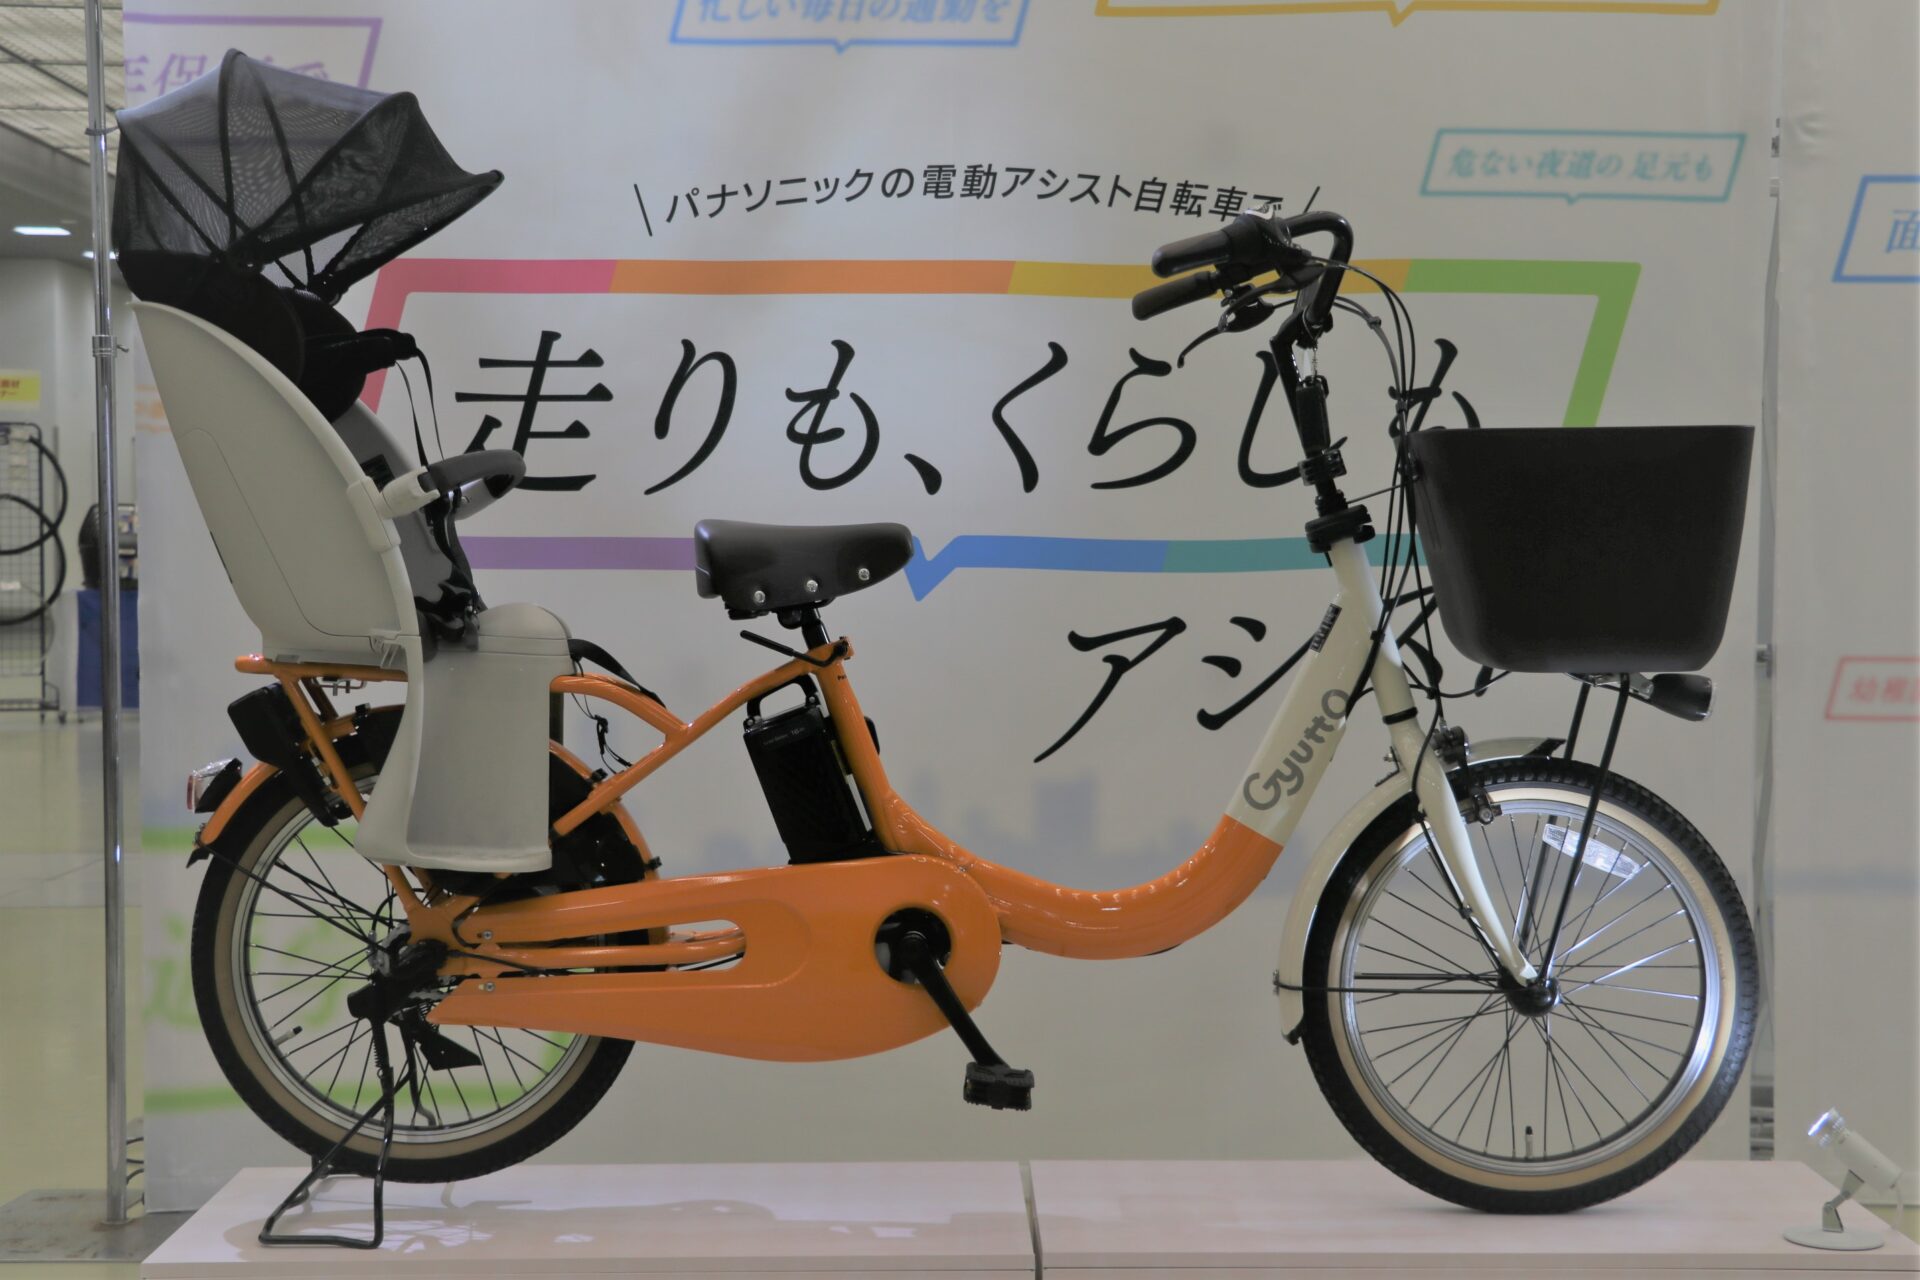 12月発売予定の新商品 Panasonic展示会に行ってきました ギュットクルームr を早速ご紹介 Panasonic Combi 京都の中古自転車 新車販売 サイクルショップ エイリン